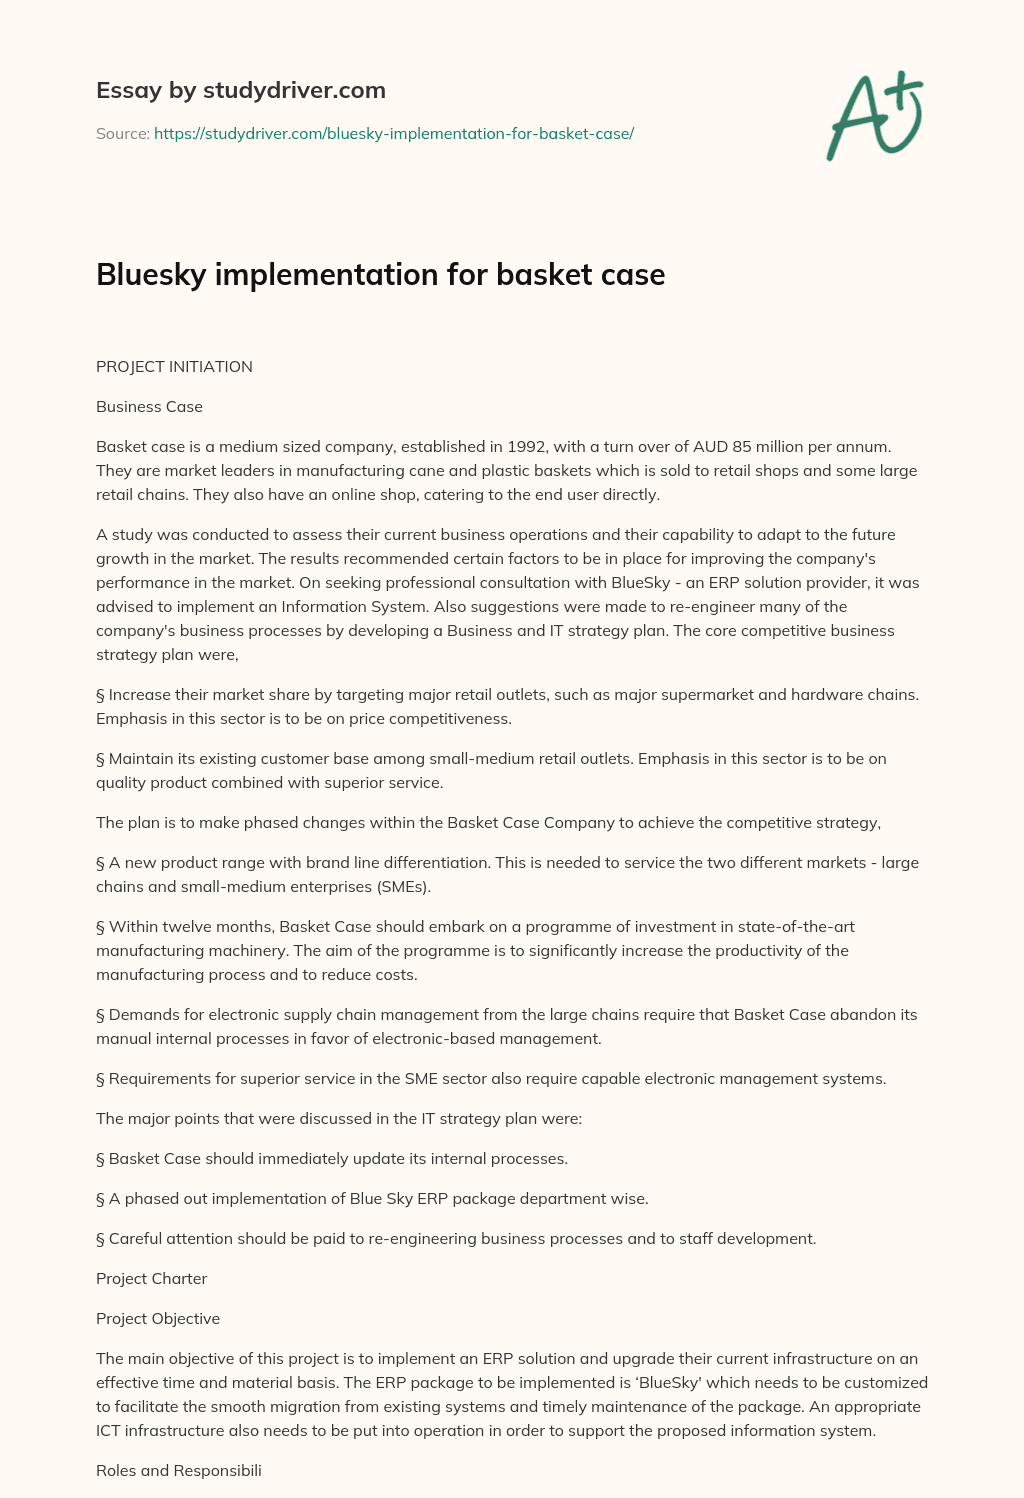 Bluesky Implementation for Basket Case essay